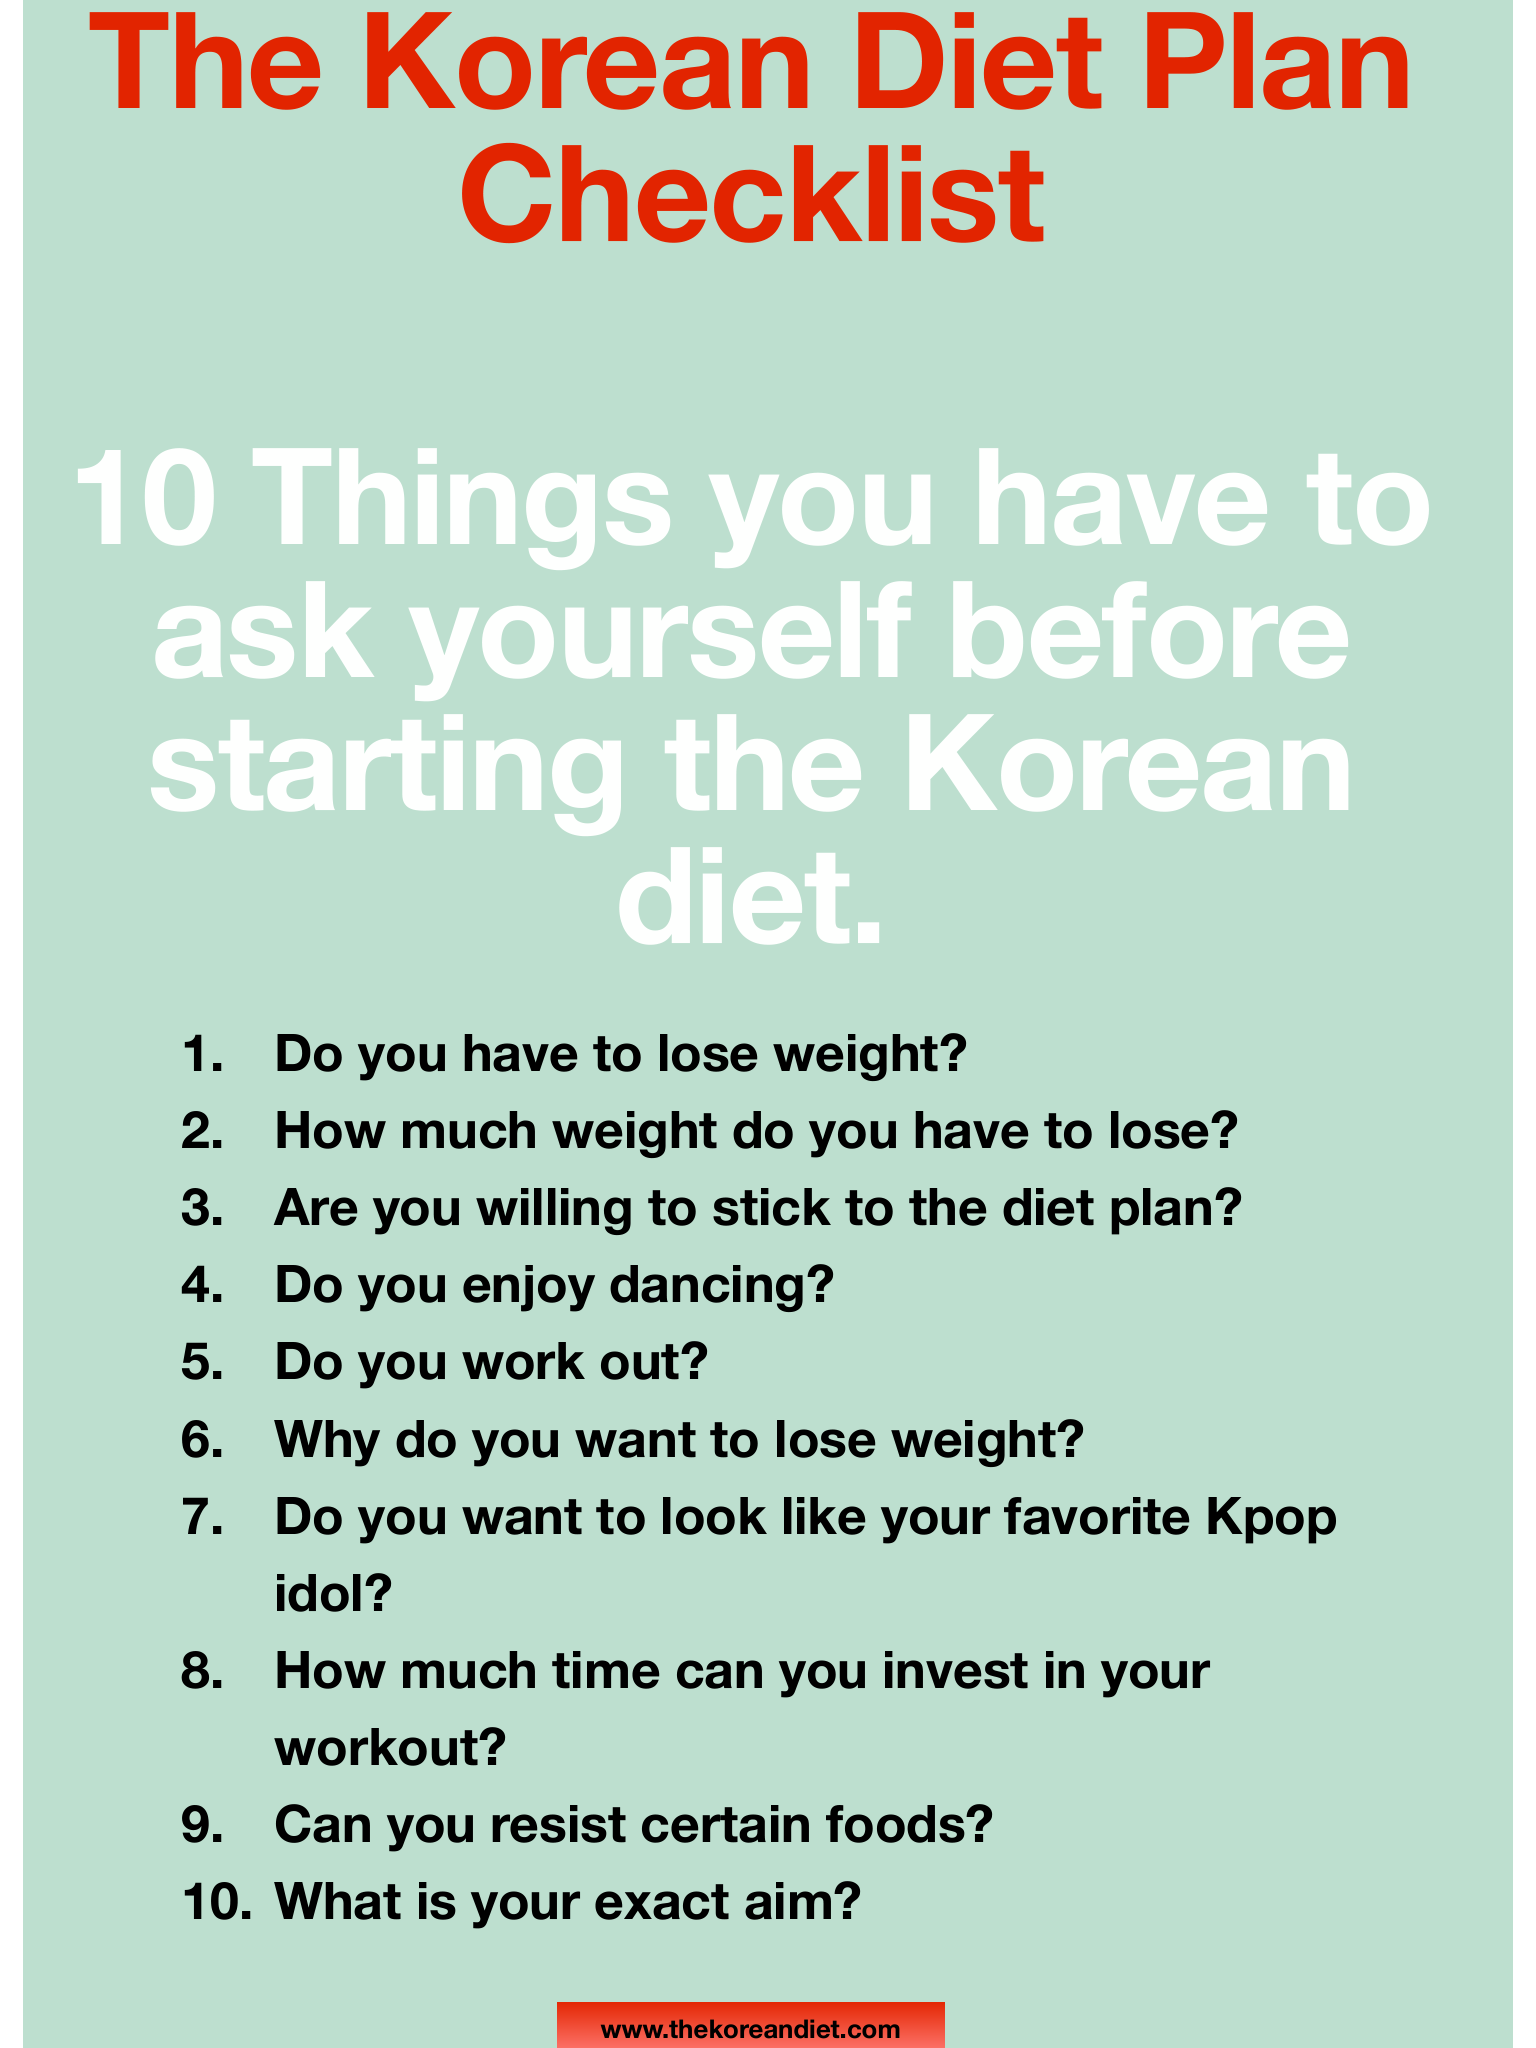 Korean Diet Plan Checklist - The Korean Diet